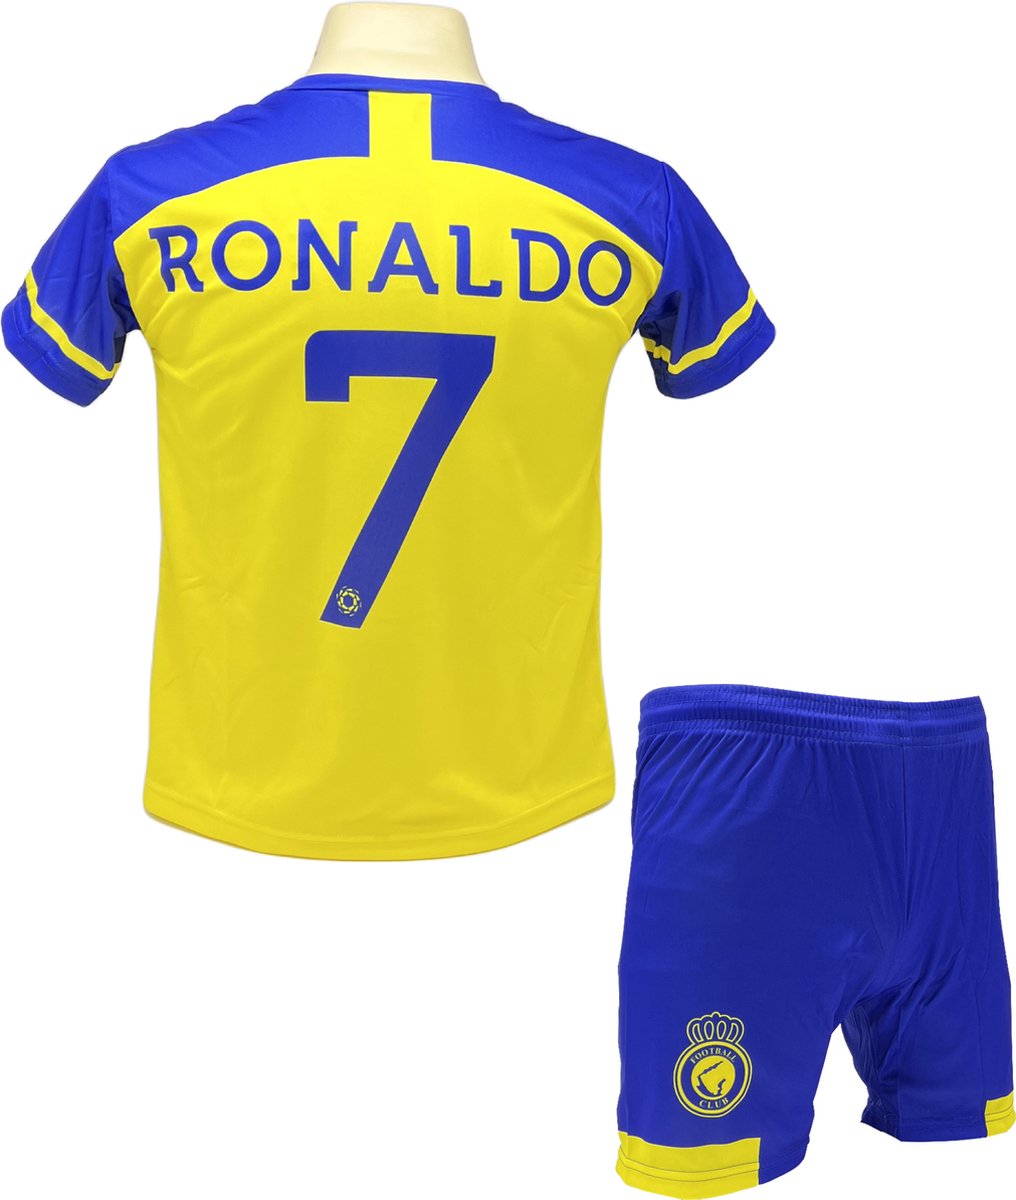 Ronaldo Al Nassr Voetbalshirt en Broekje Voetbaltenue - Maat M